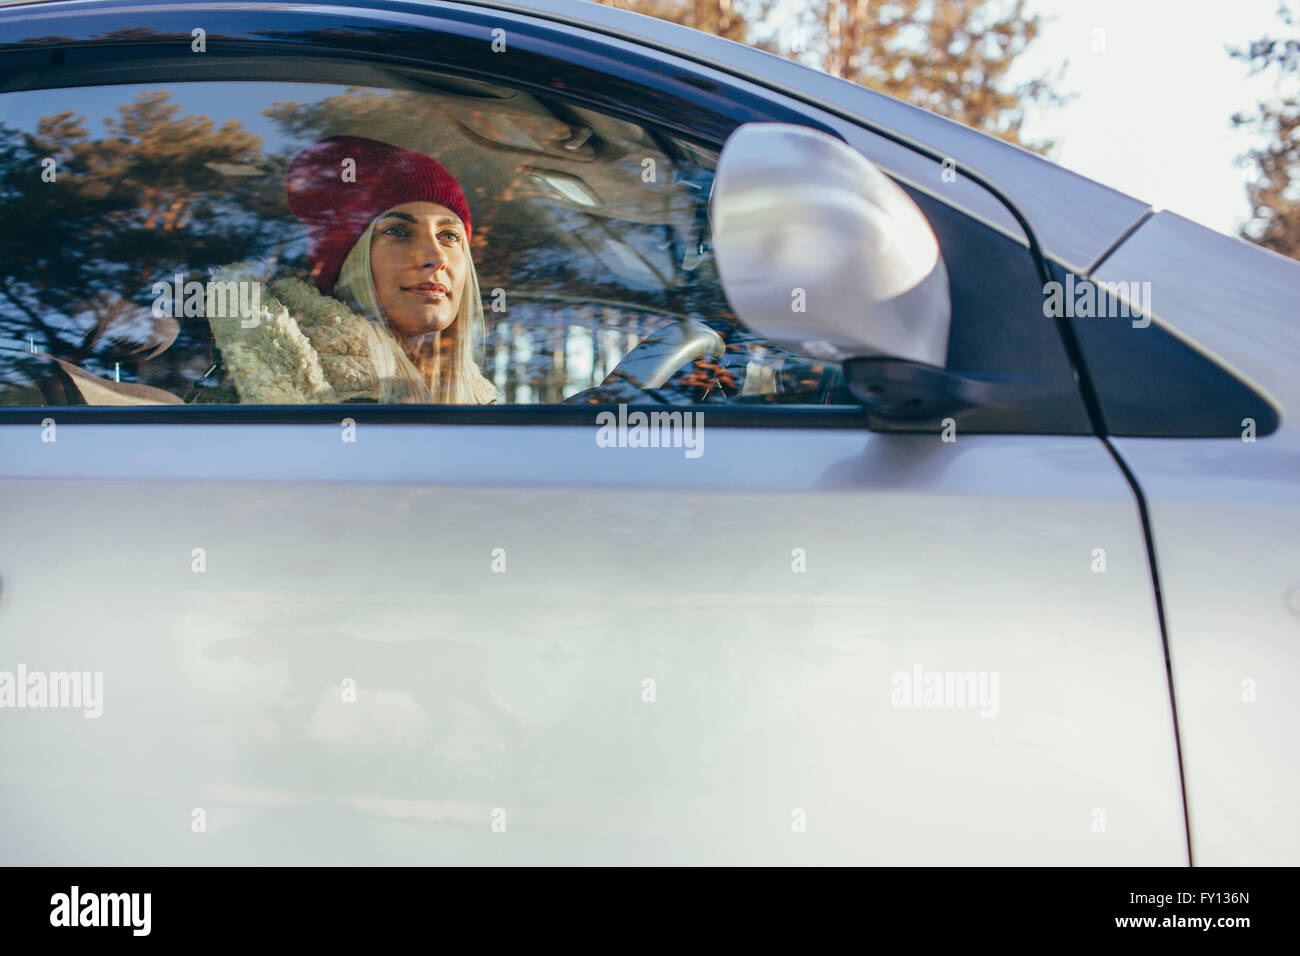 Basso angolo di visione della donna alla guida di auto durante il periodo invernale Foto Stock